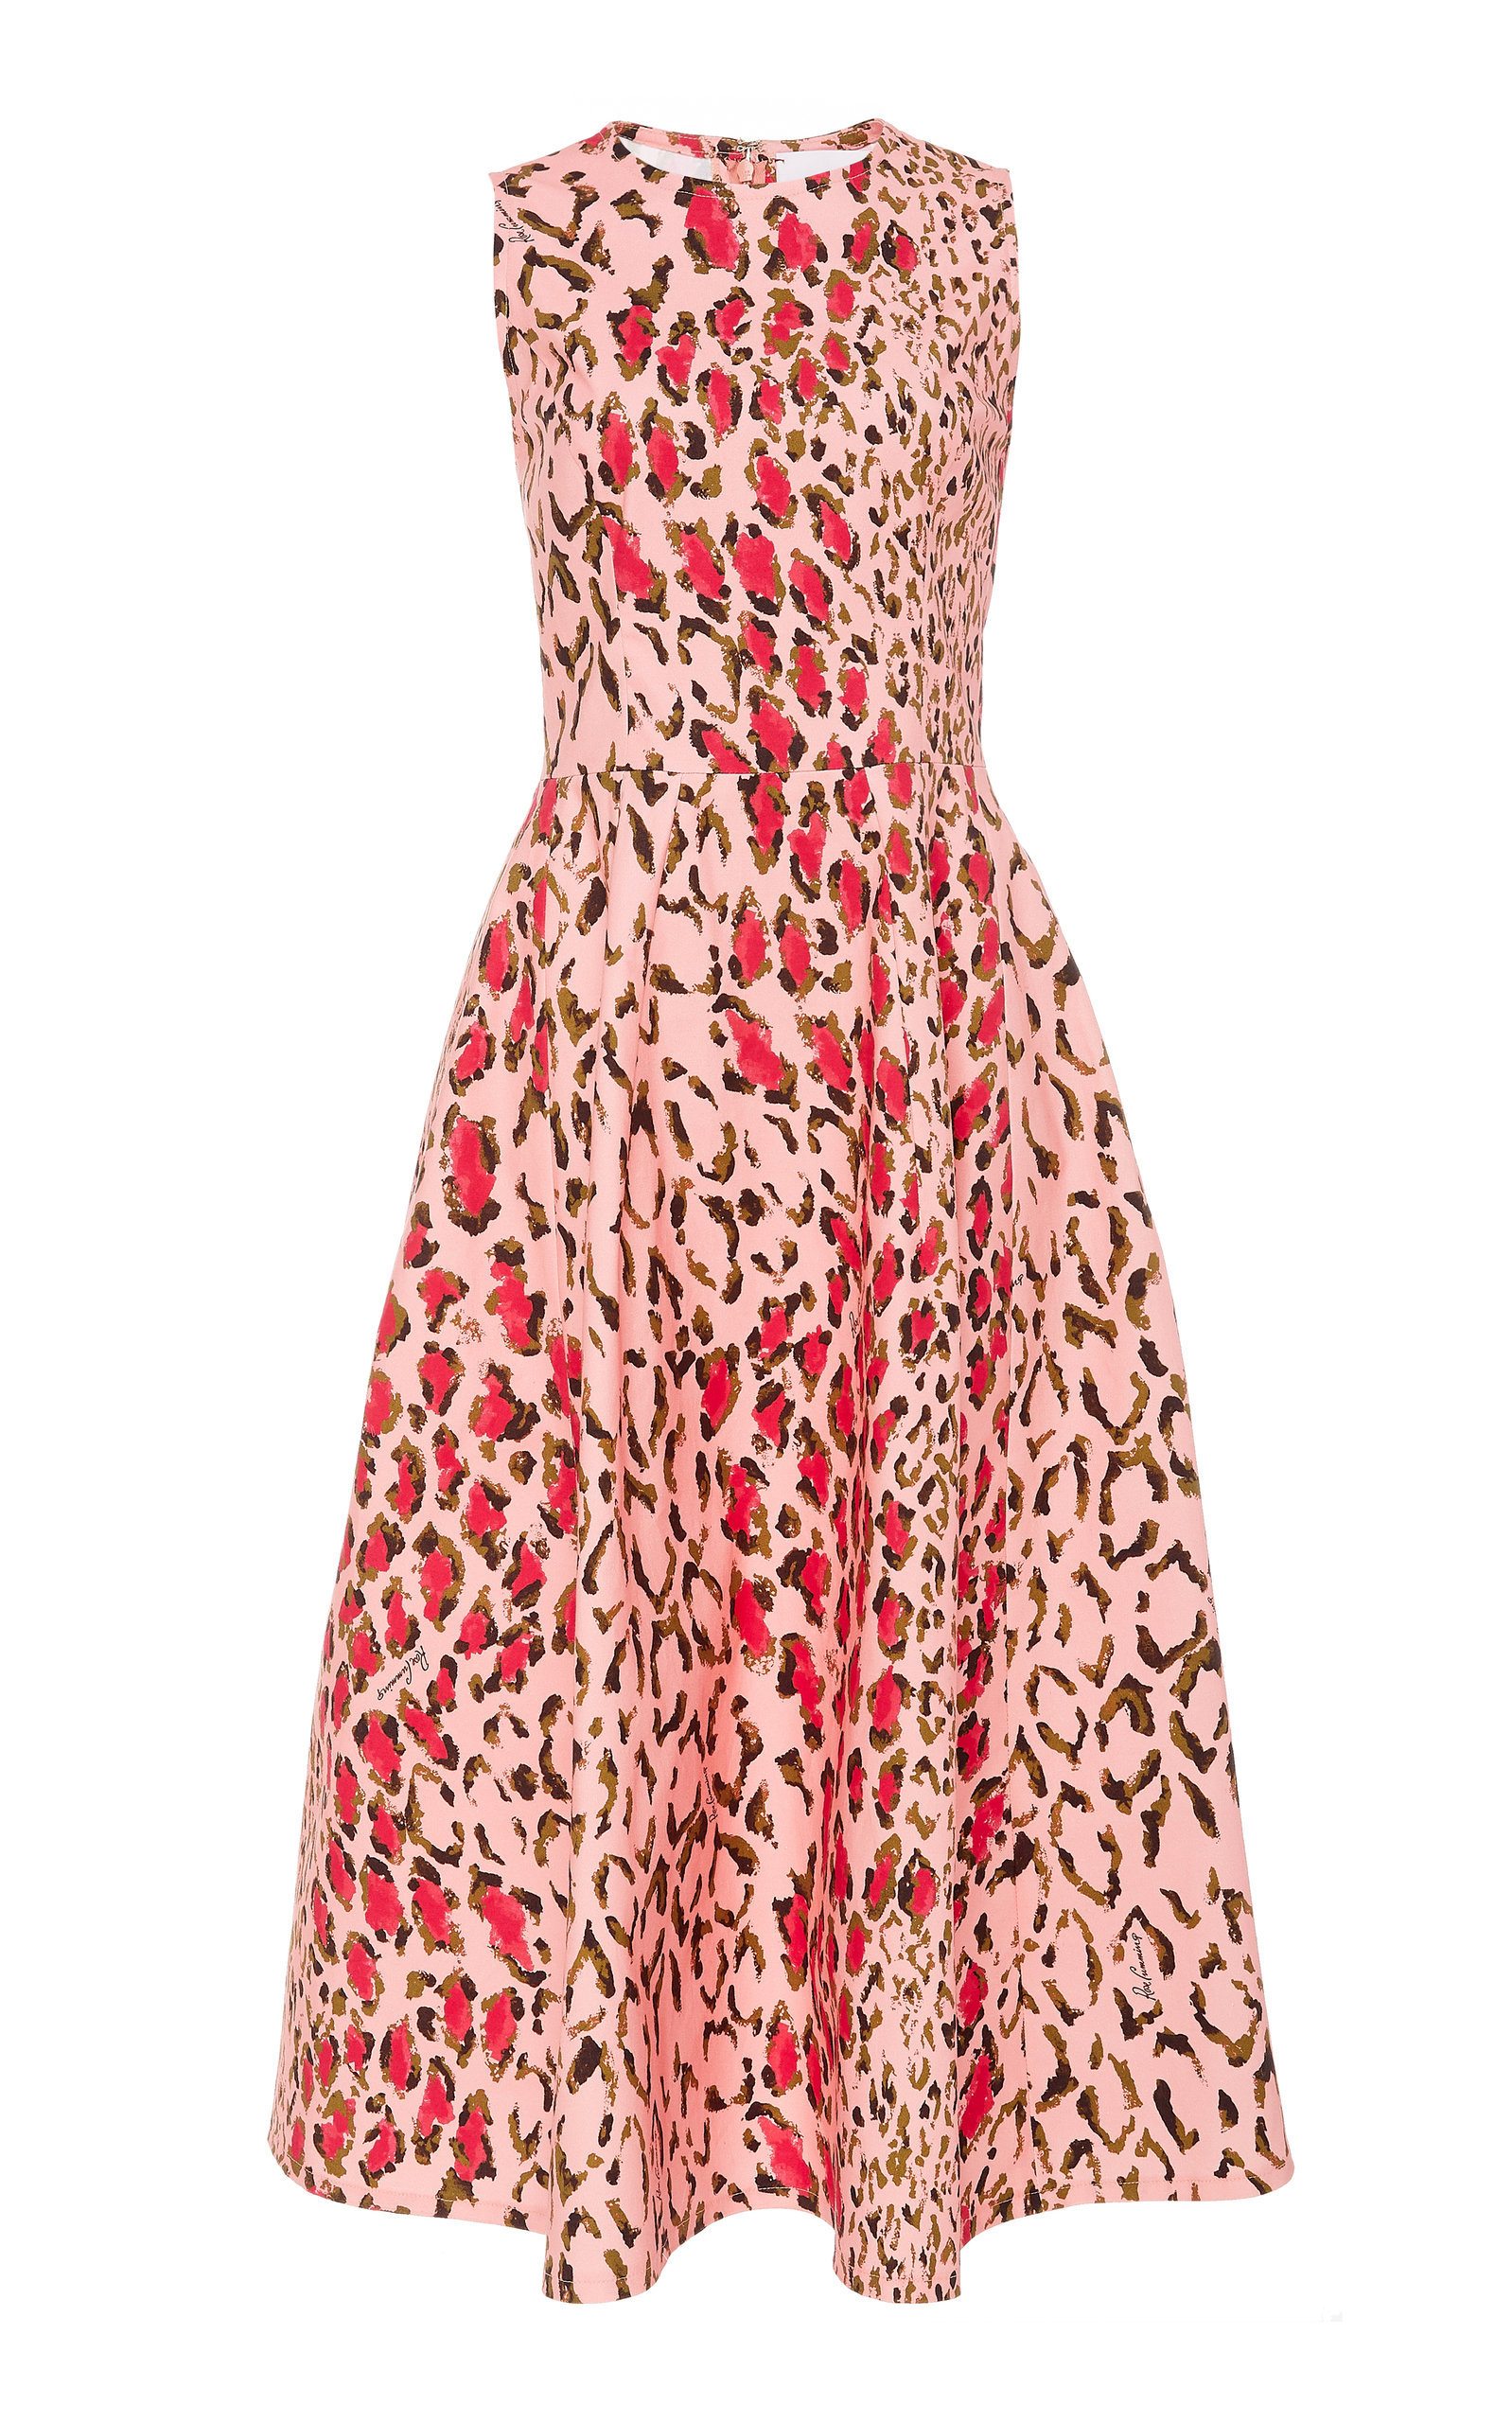 Leopard Print Cotton Sleeveless A Line Dress, $1,590